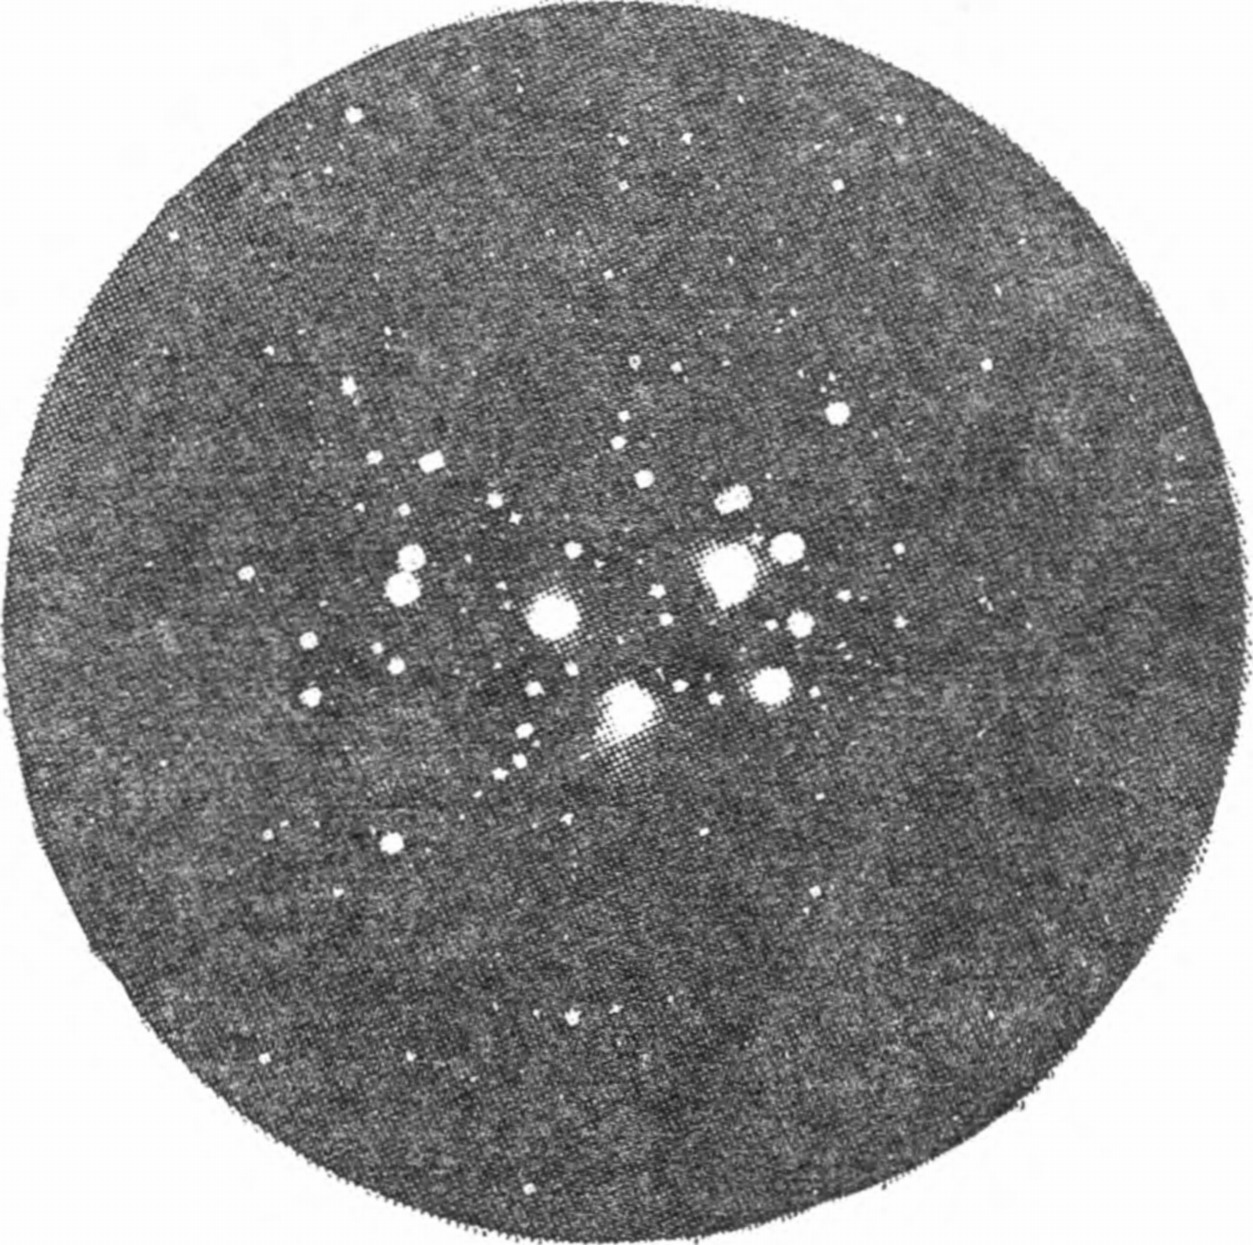 Рис. 168. Фотография рассеянного (галактического) звездного скопления Плеяды